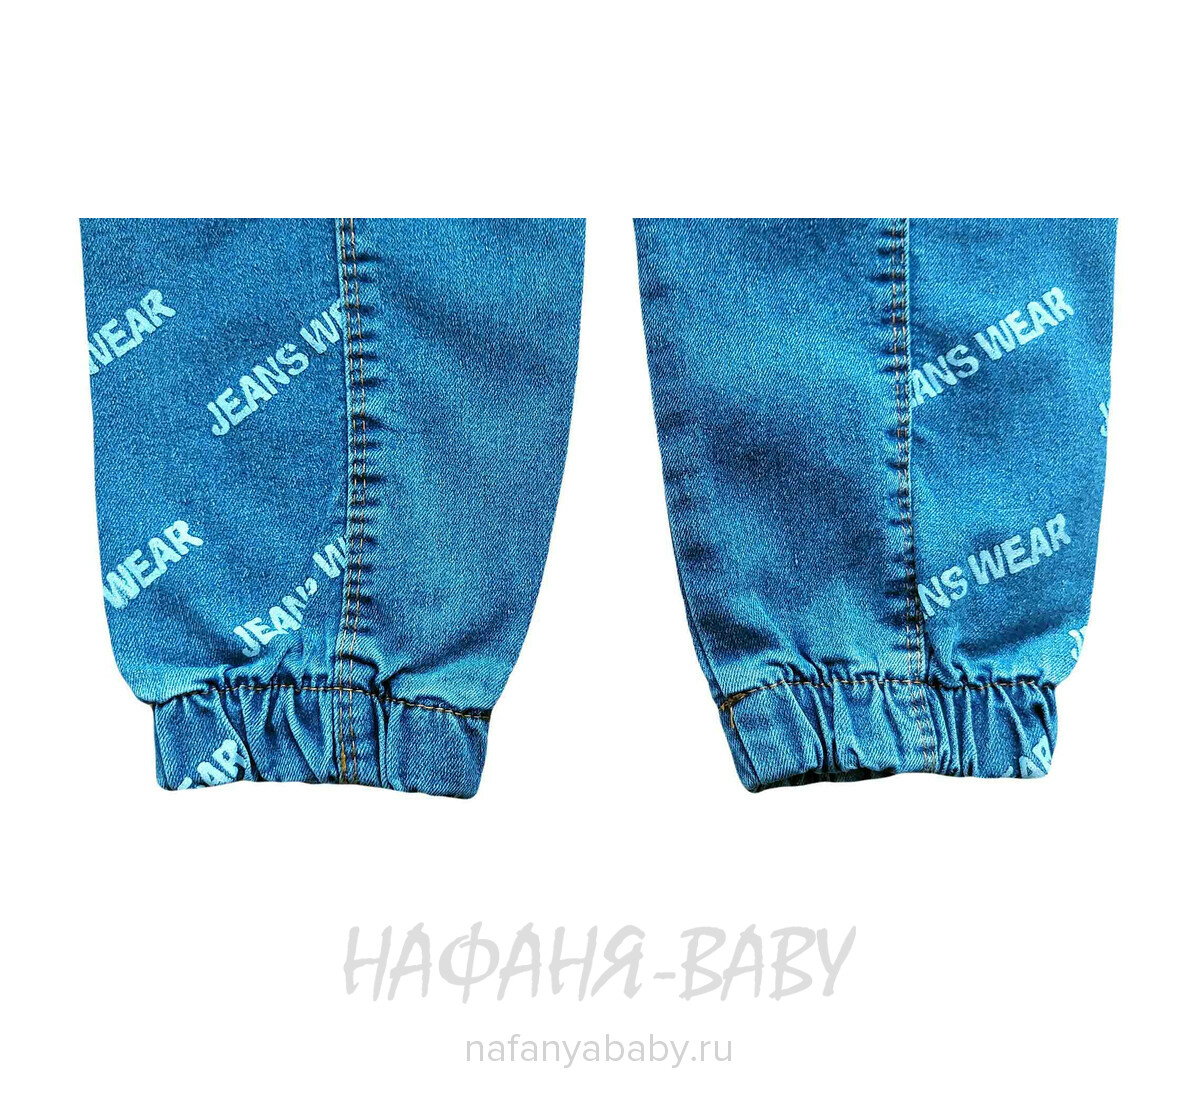 Подростковые джинсы YAVRUCAK арт: 5251 для мальчика от 8 до 12 лет, цвет синий, оптом Турция